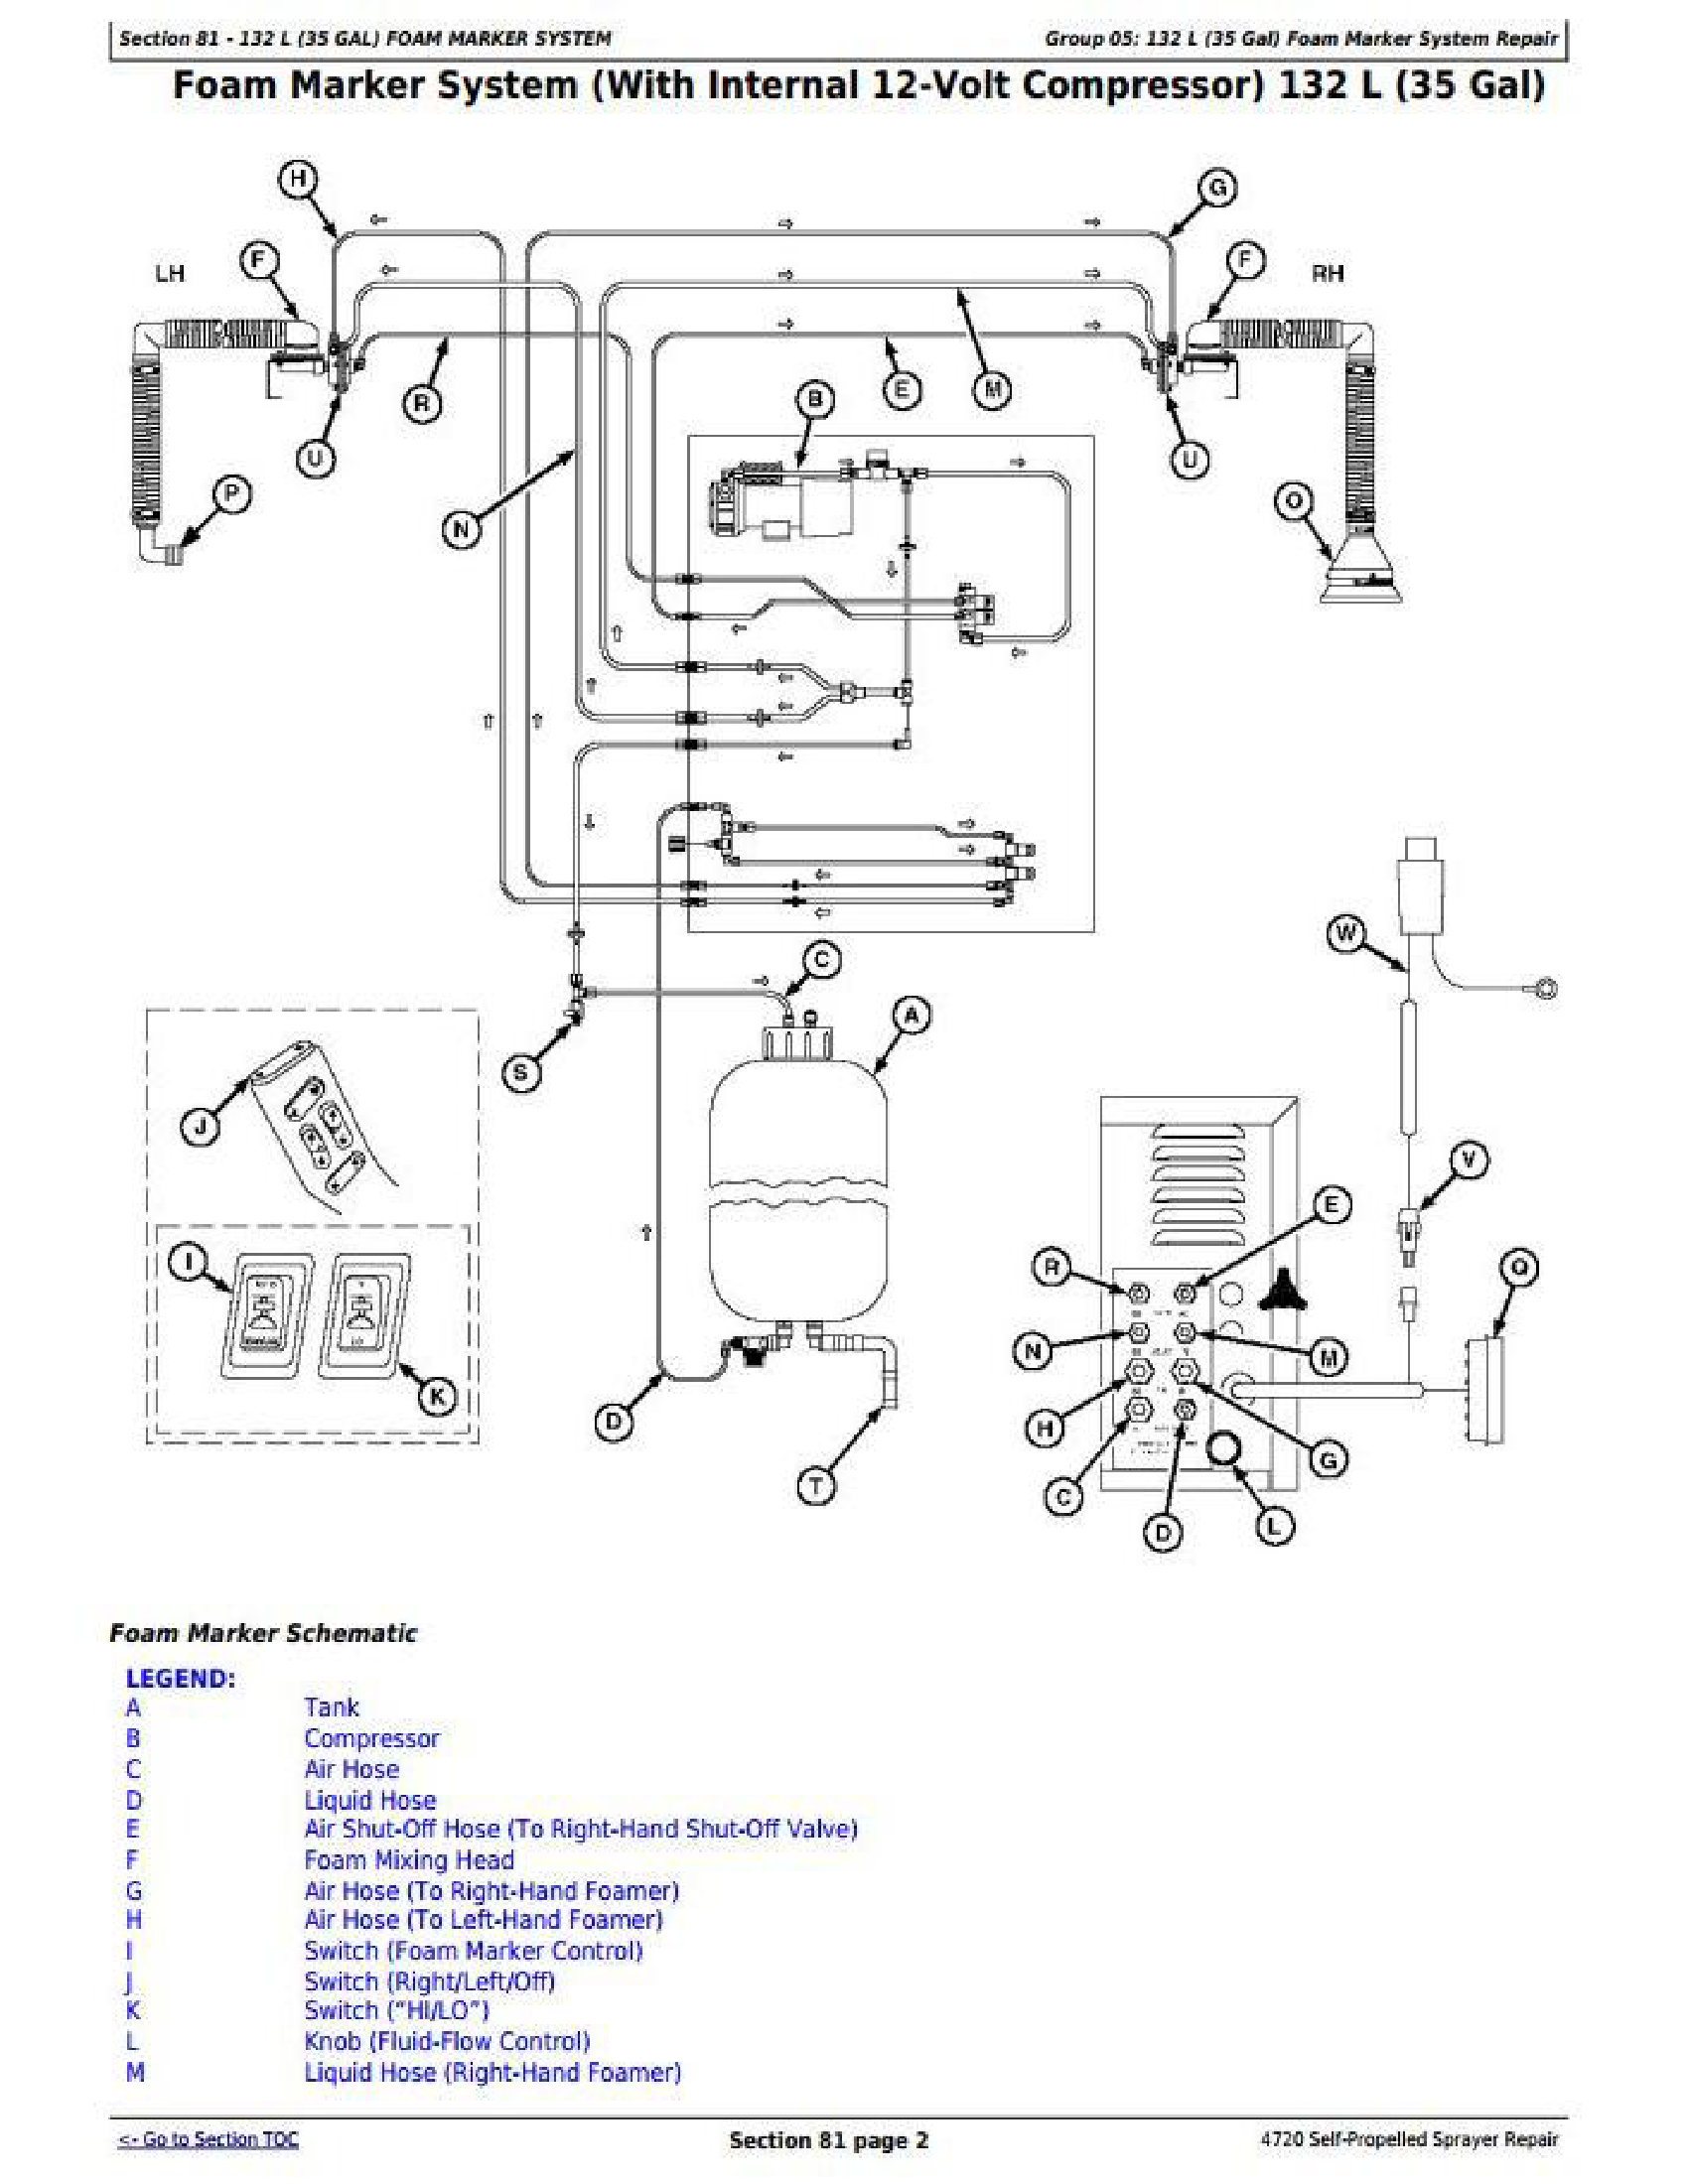 John Deere 5820 manual pdf